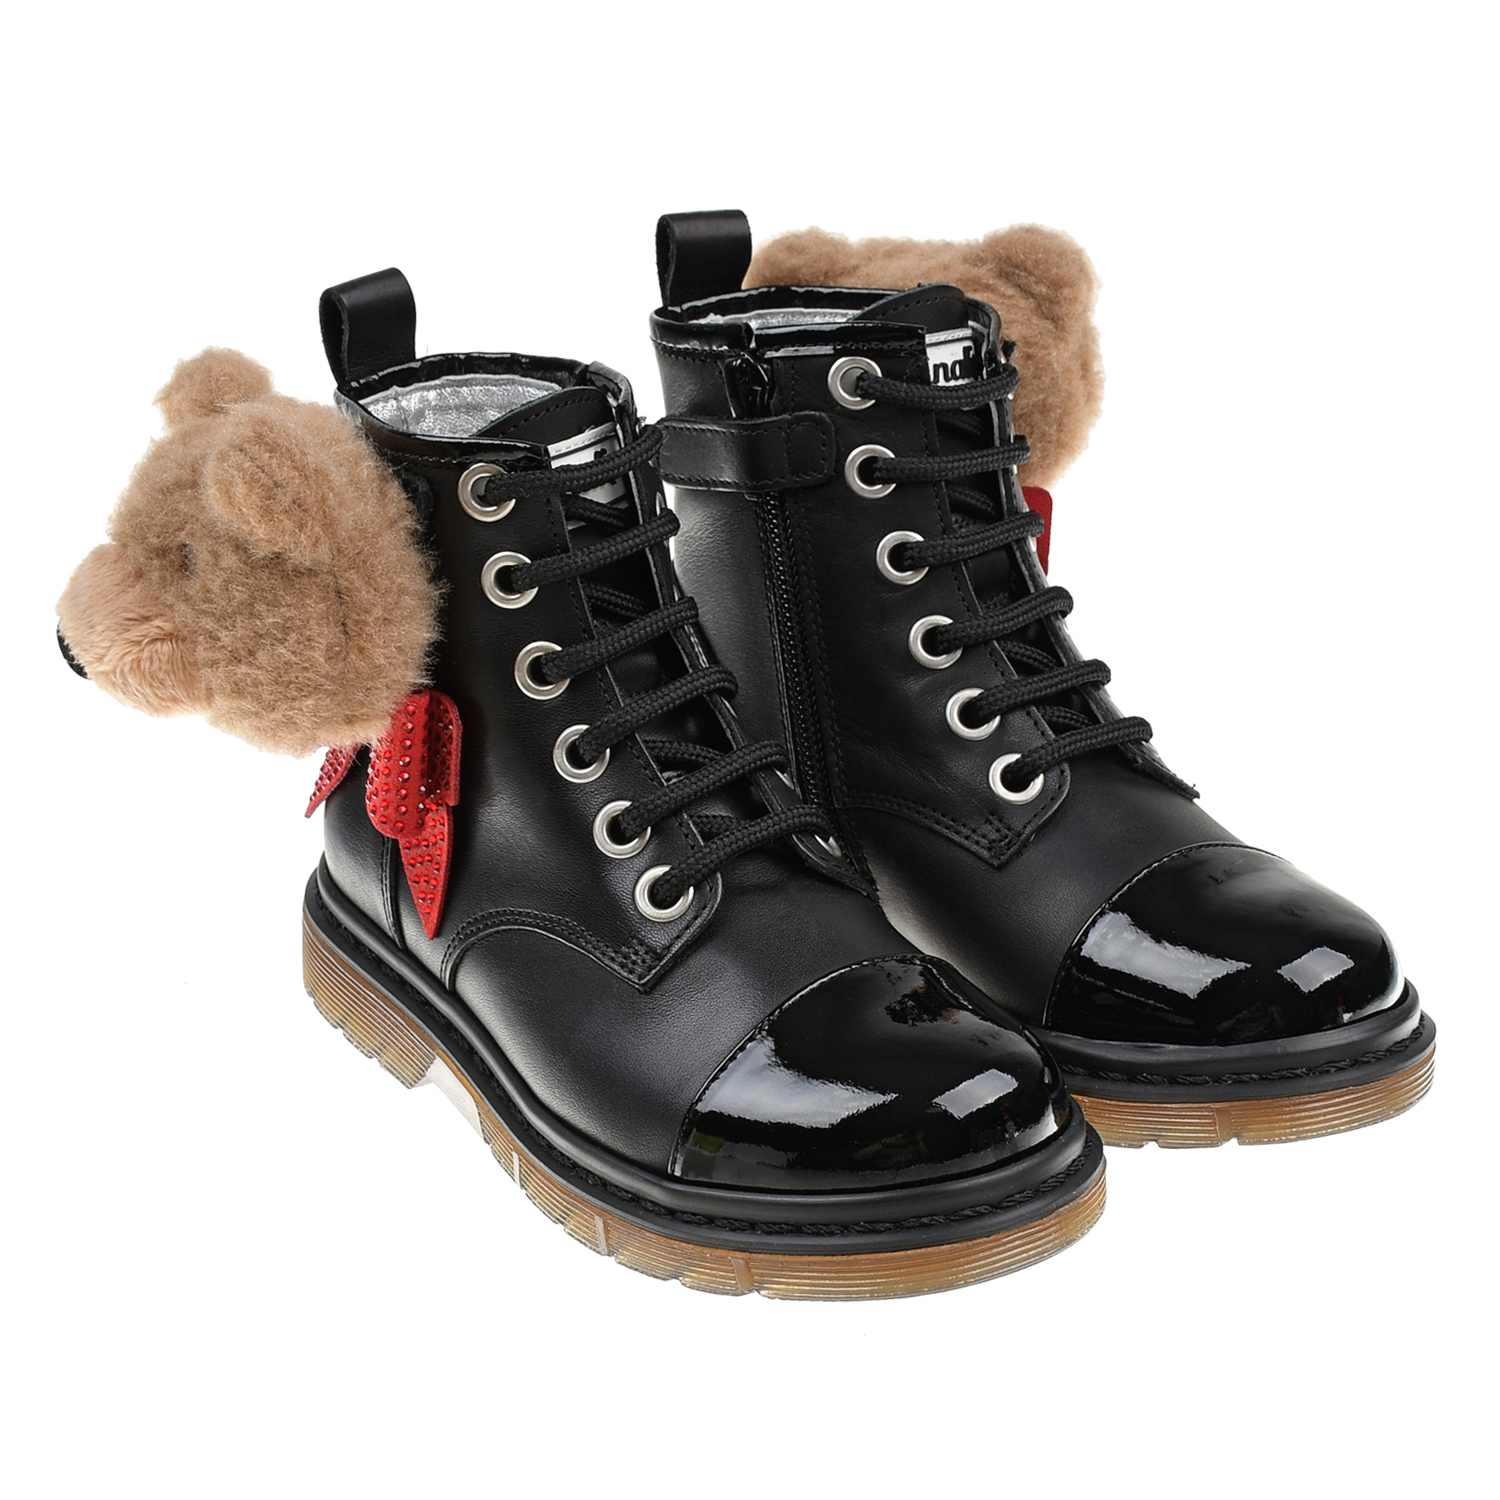 Кожаные ботинки с аппликацией "медвежонок" Monnalisa детские, размер 26, цвет черный